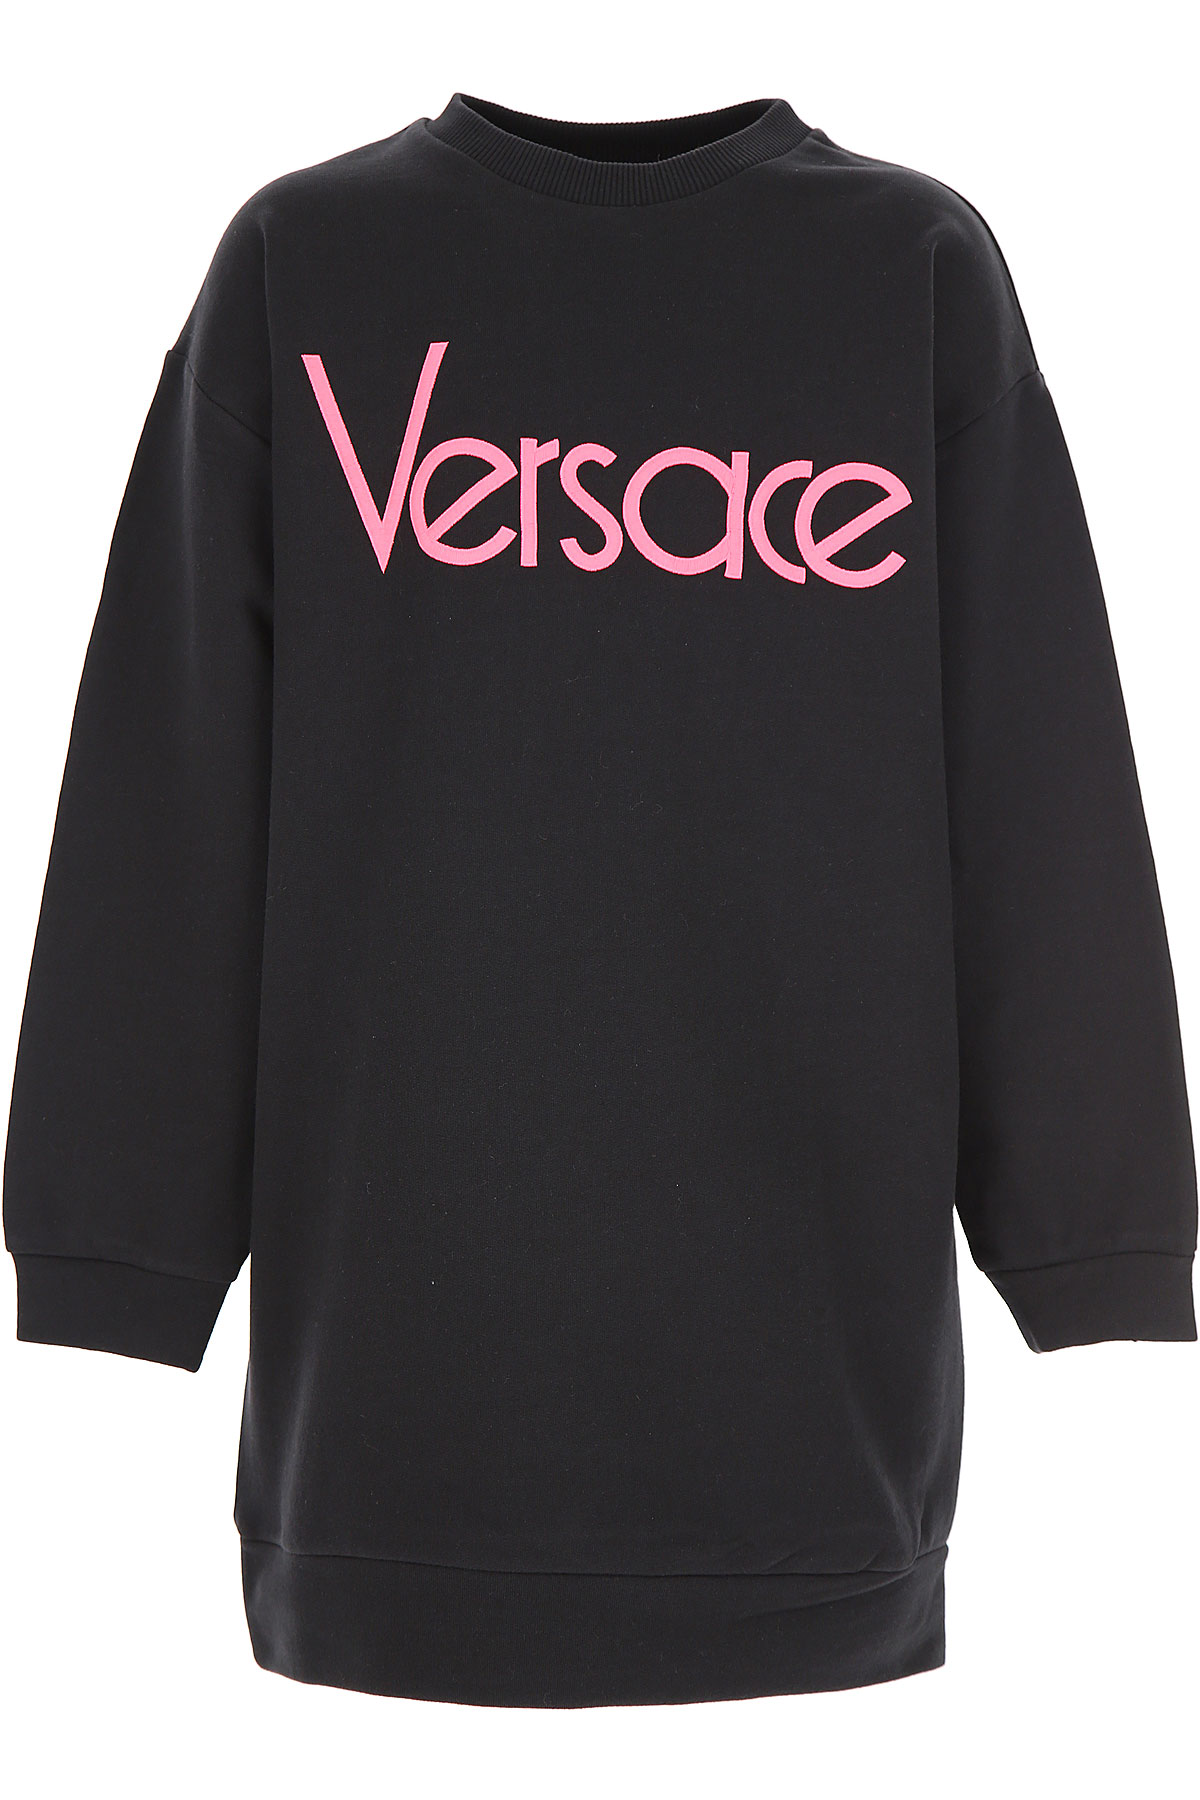 Versace Kleid für Mädchen Günstig im Sale, Schwarz, Baumwolle, 2017, 10Y 12Y 8Y